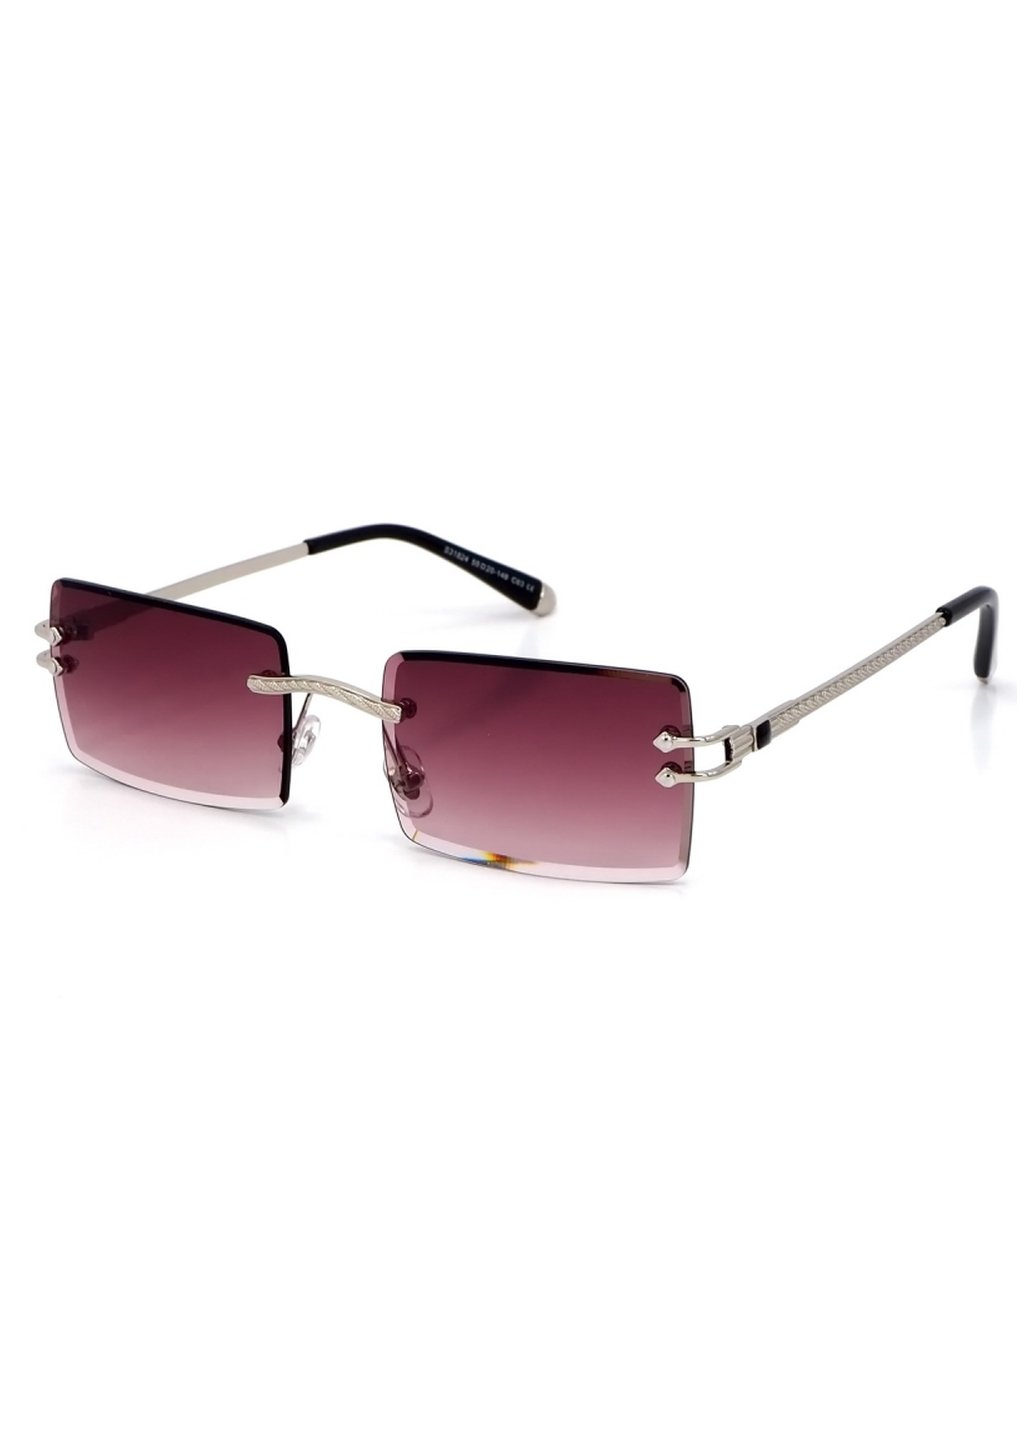 Купить Женские солнцезащитные очки Merlini с поляризацией S31824 117078 - Серый в интернет-магазине